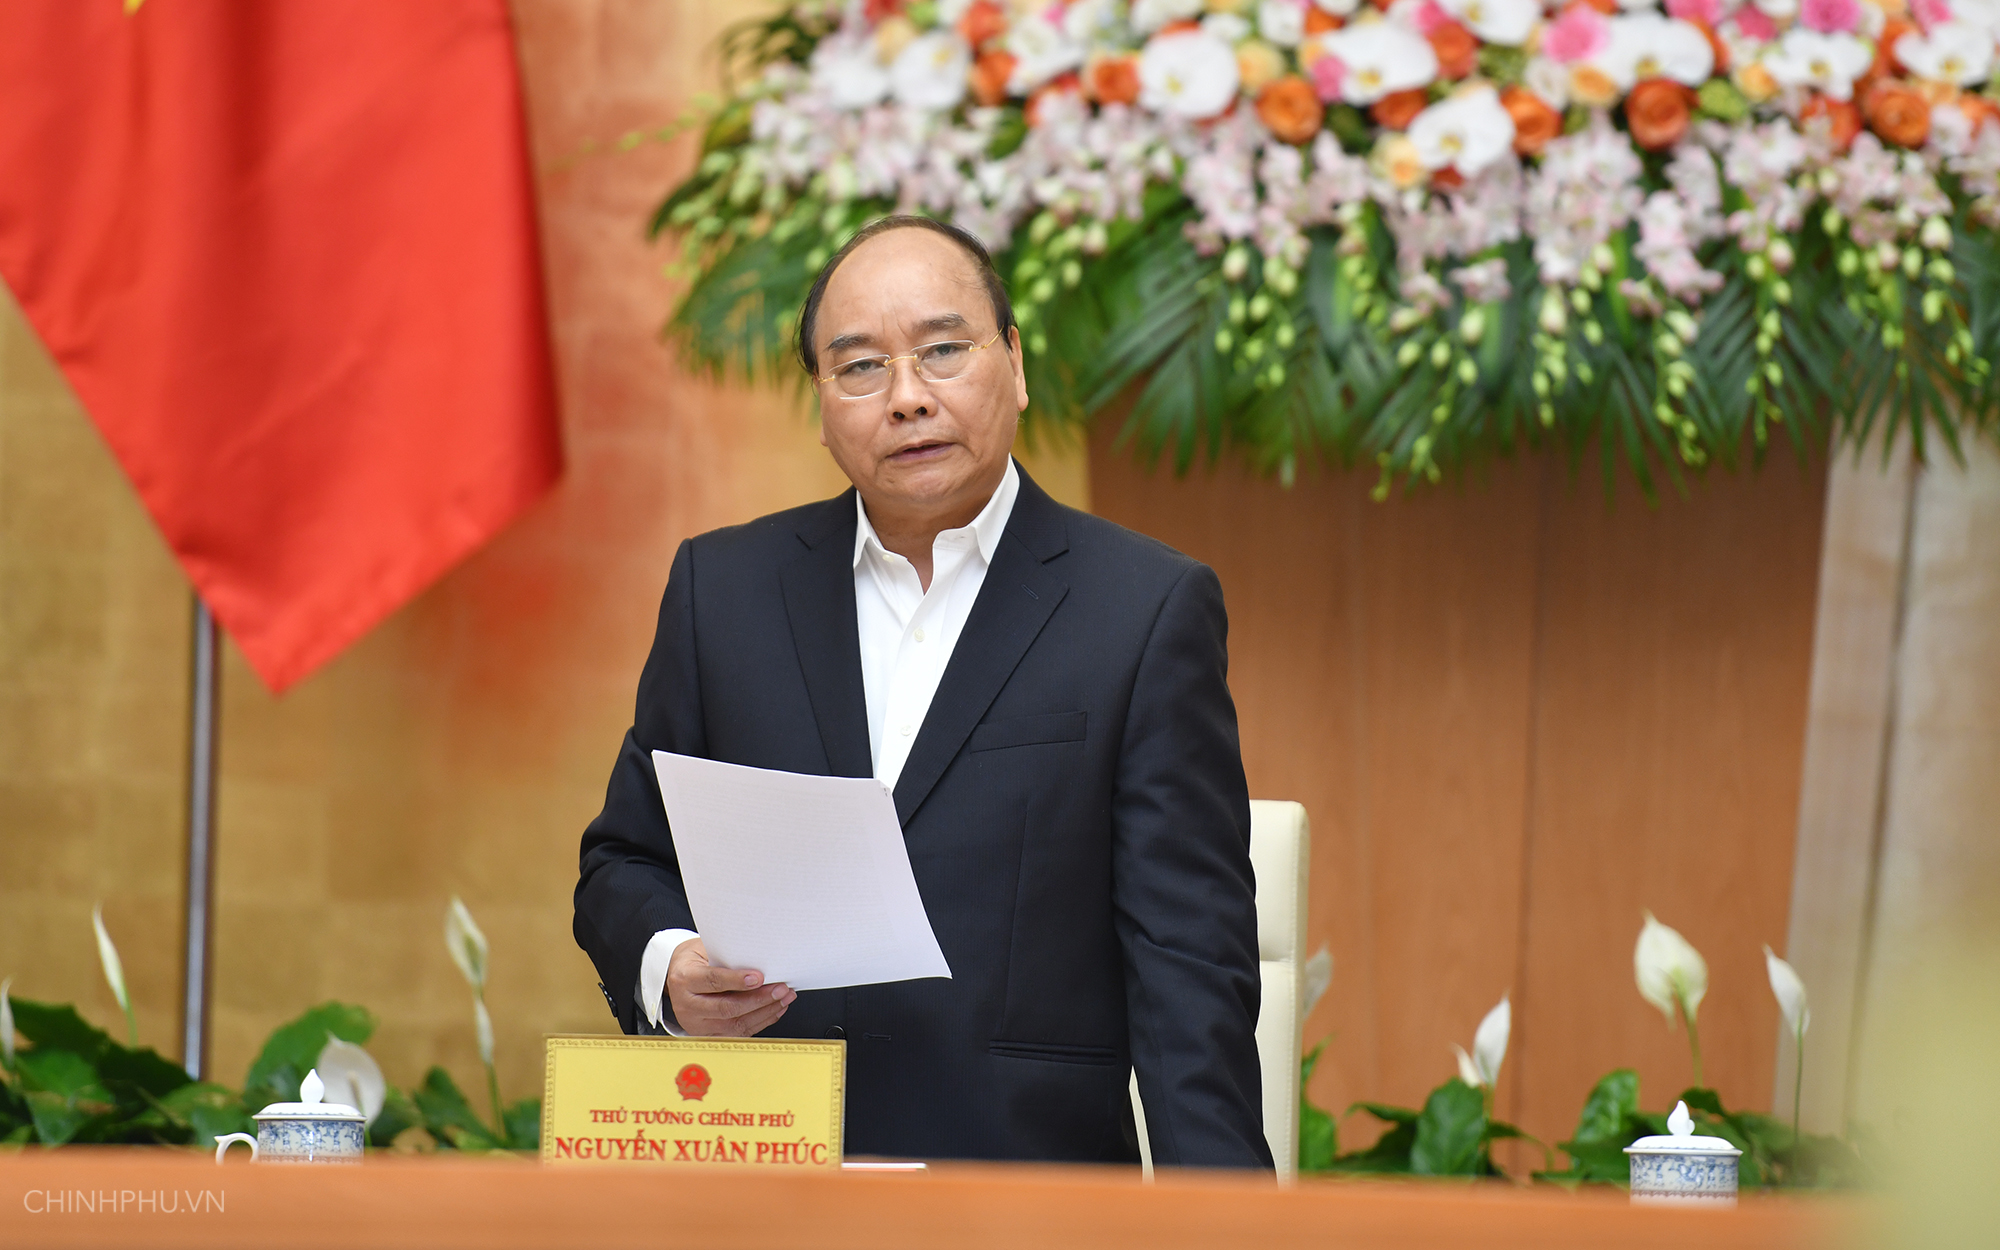 Thủ tướng Nguyễn Xuân Phúc yêu cầu Chính phủ lập tổ công tác đặc biệt xử lý các vụ việc 'nóng', bức xúc trong xã hội (Thời sự chiều 3/12/2018)